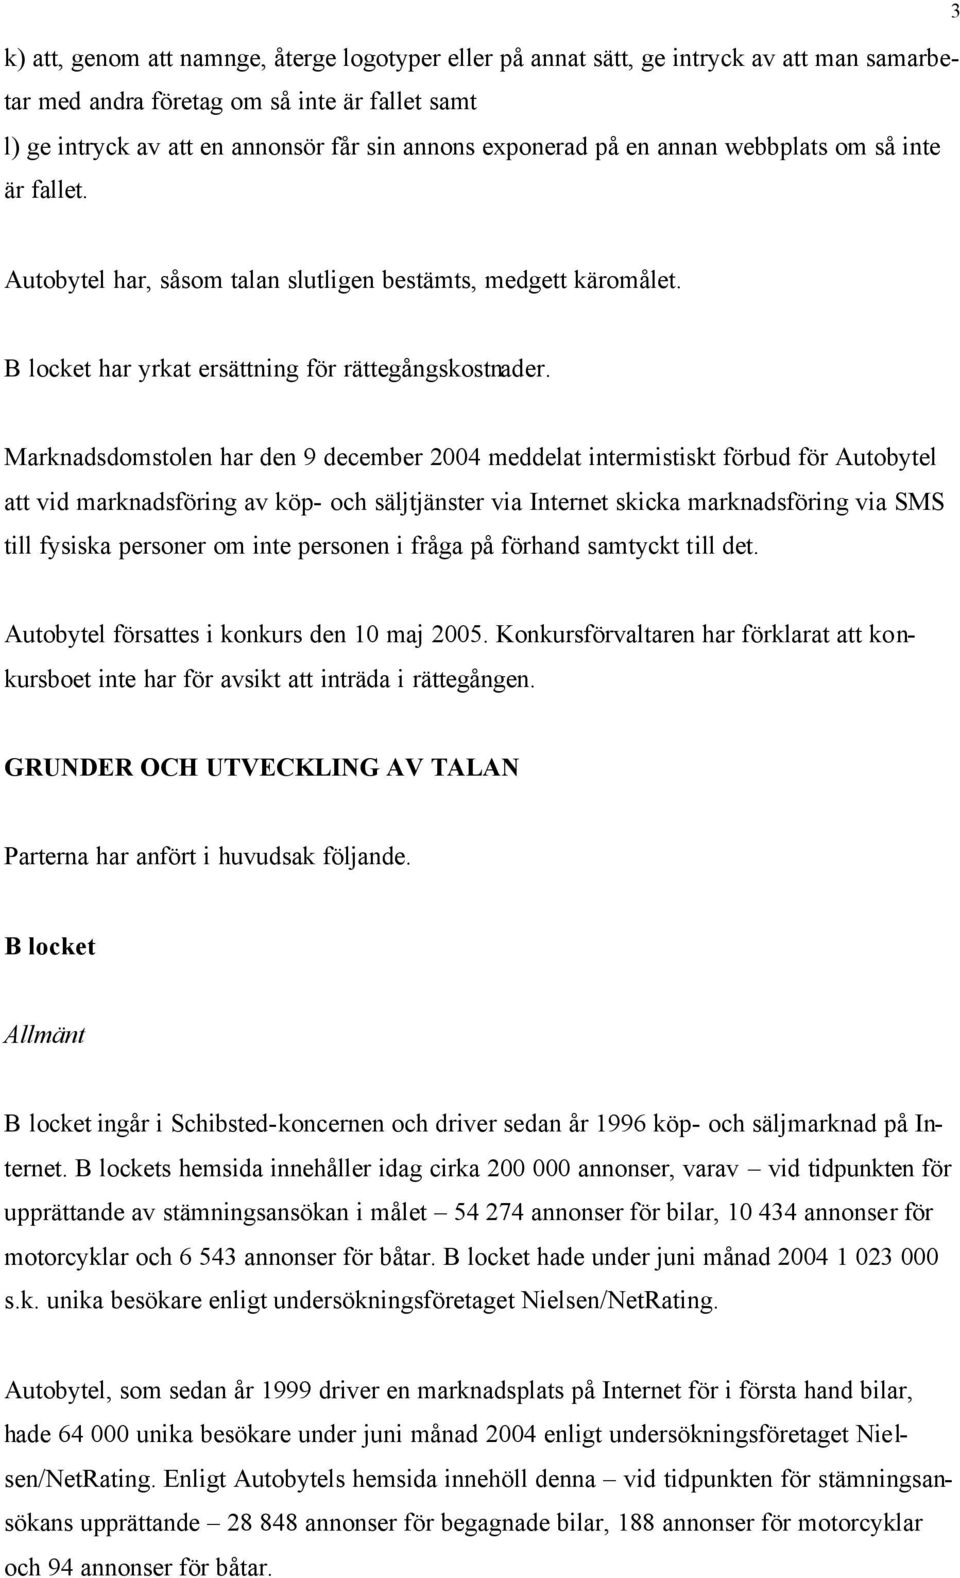 Marknadsdomstolen har den 9 december 2004 meddelat intermistiskt förbud för Autobytel att vid marknadsföring av köp- och säljtjänster via Internet skicka marknadsföring via SMS till fysiska personer